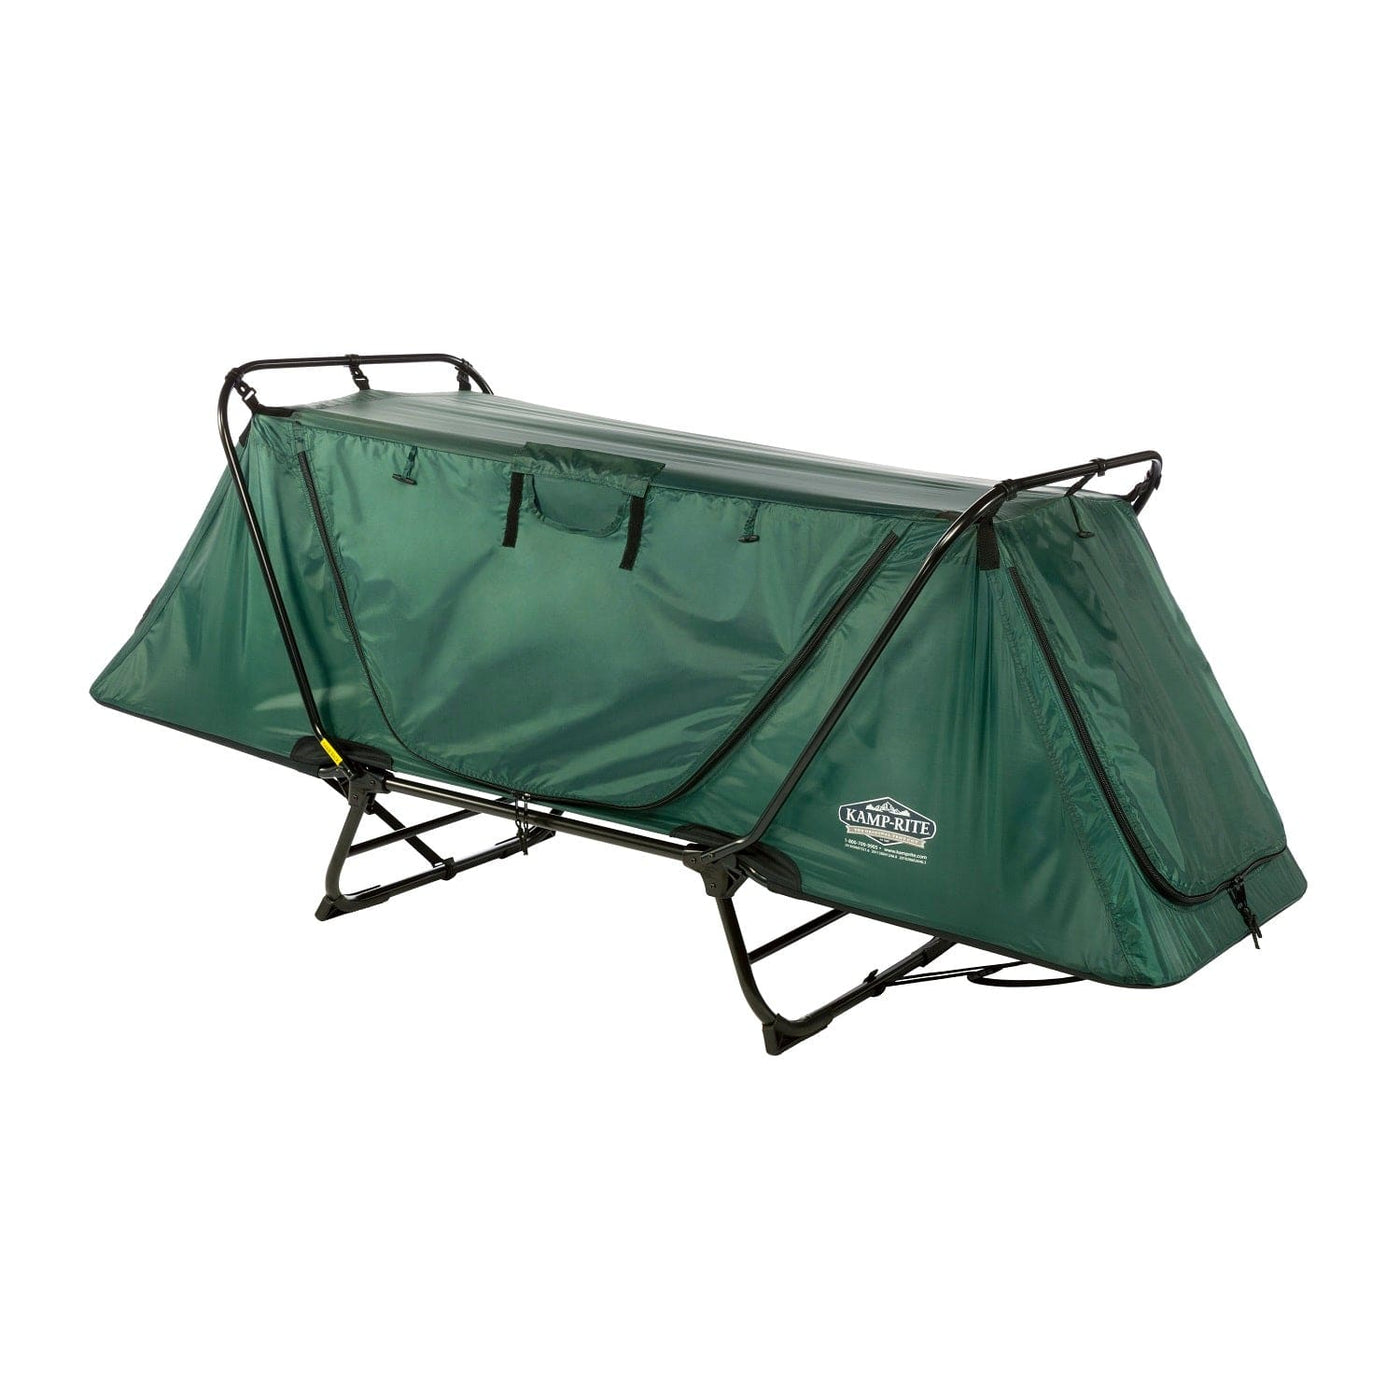 Kamp-Rite Kamp-Rite Original Tent Cot TC243 Camping And Outdoor